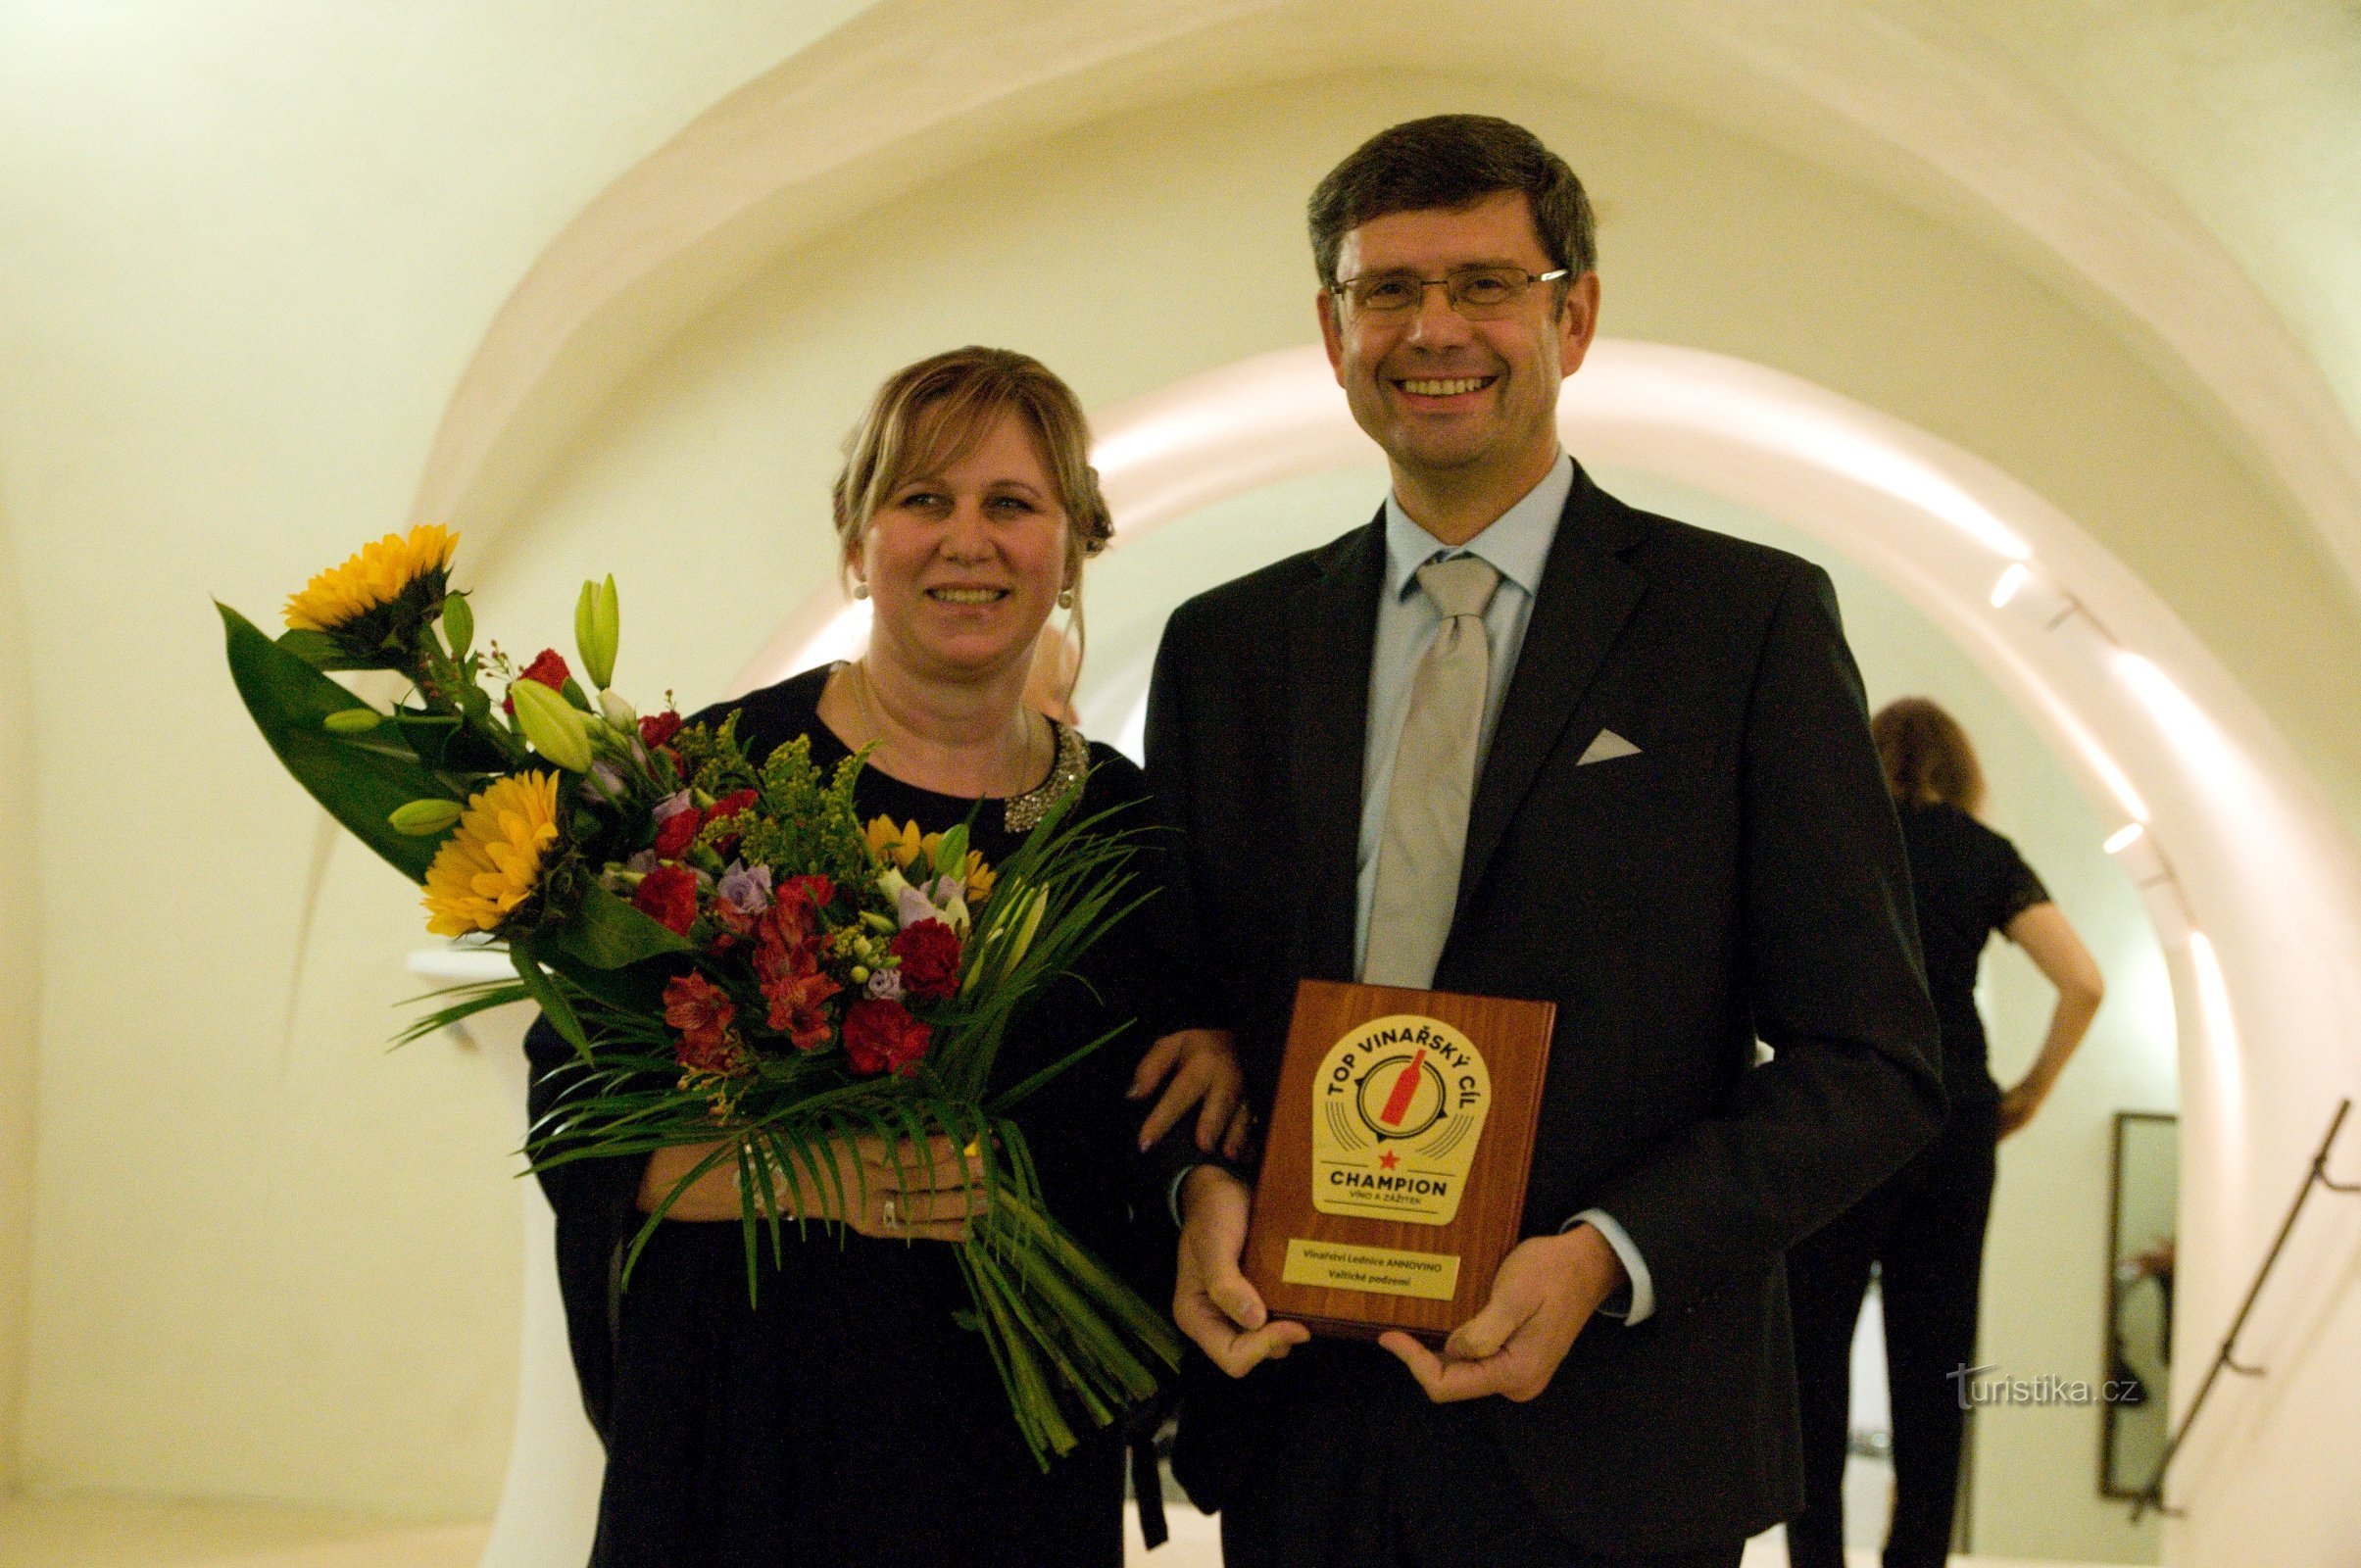 R: Žďárský se lleva con orgullo un valioso trofeo: la placa Top Wine Destination CHAMPION.